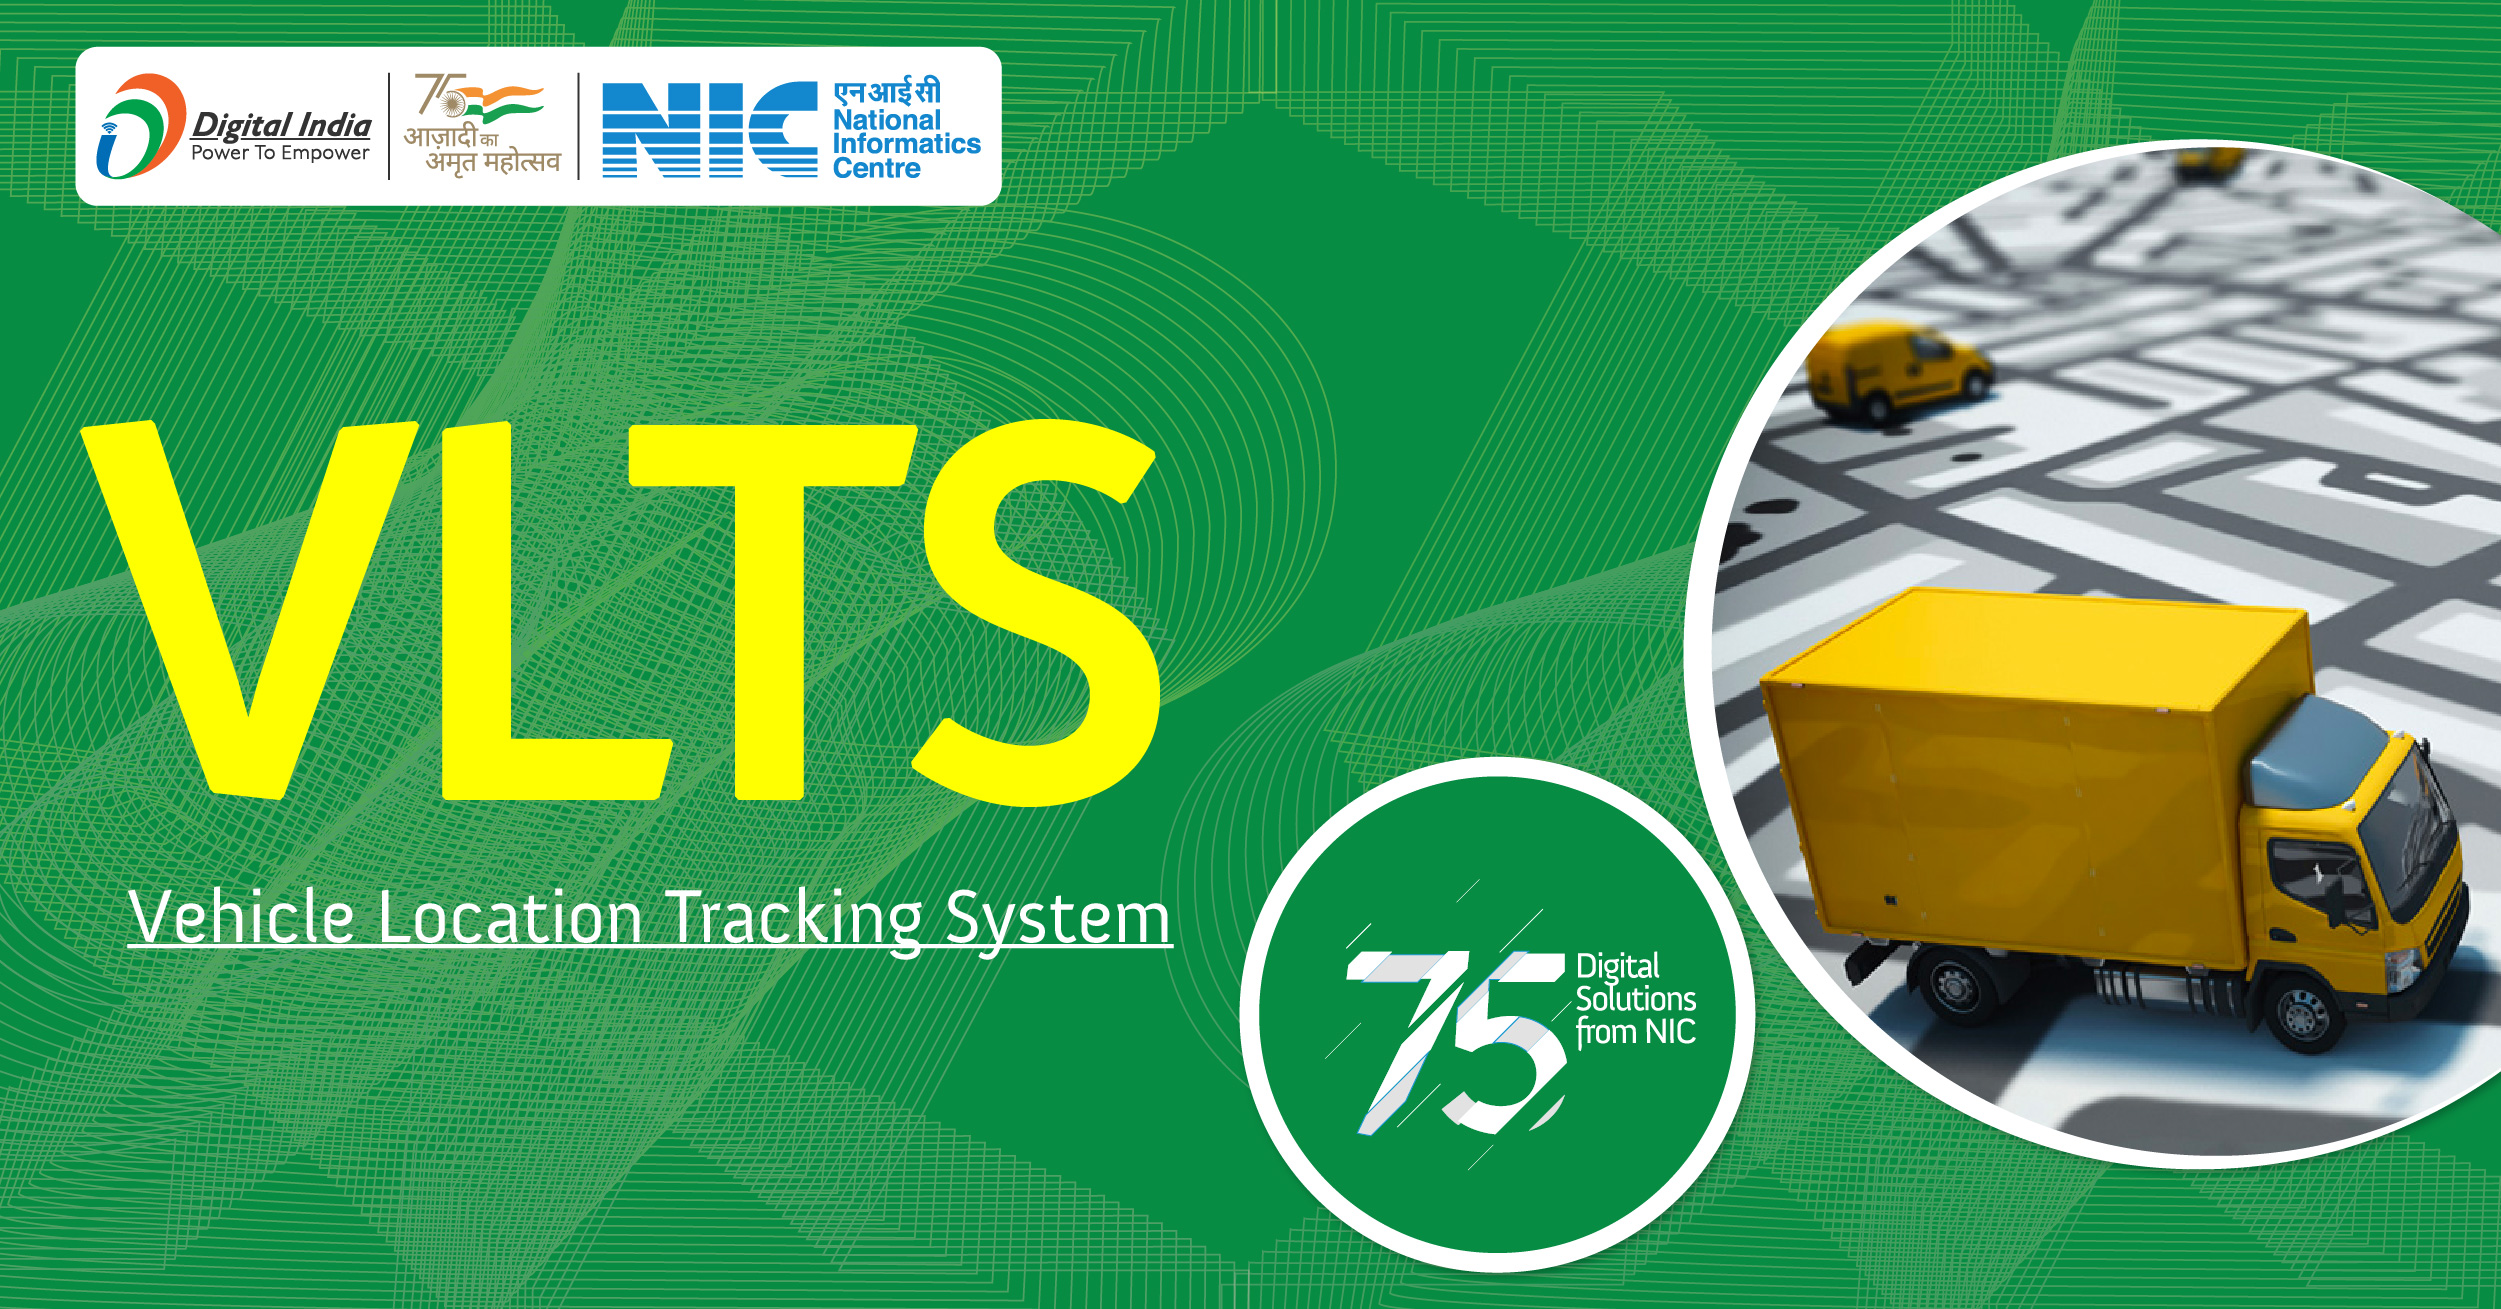 वीएलटीएस - वाहनों के स्थान की रीयल टाइम ट्रैकिंग के लिए एक डिजिटल समाधान